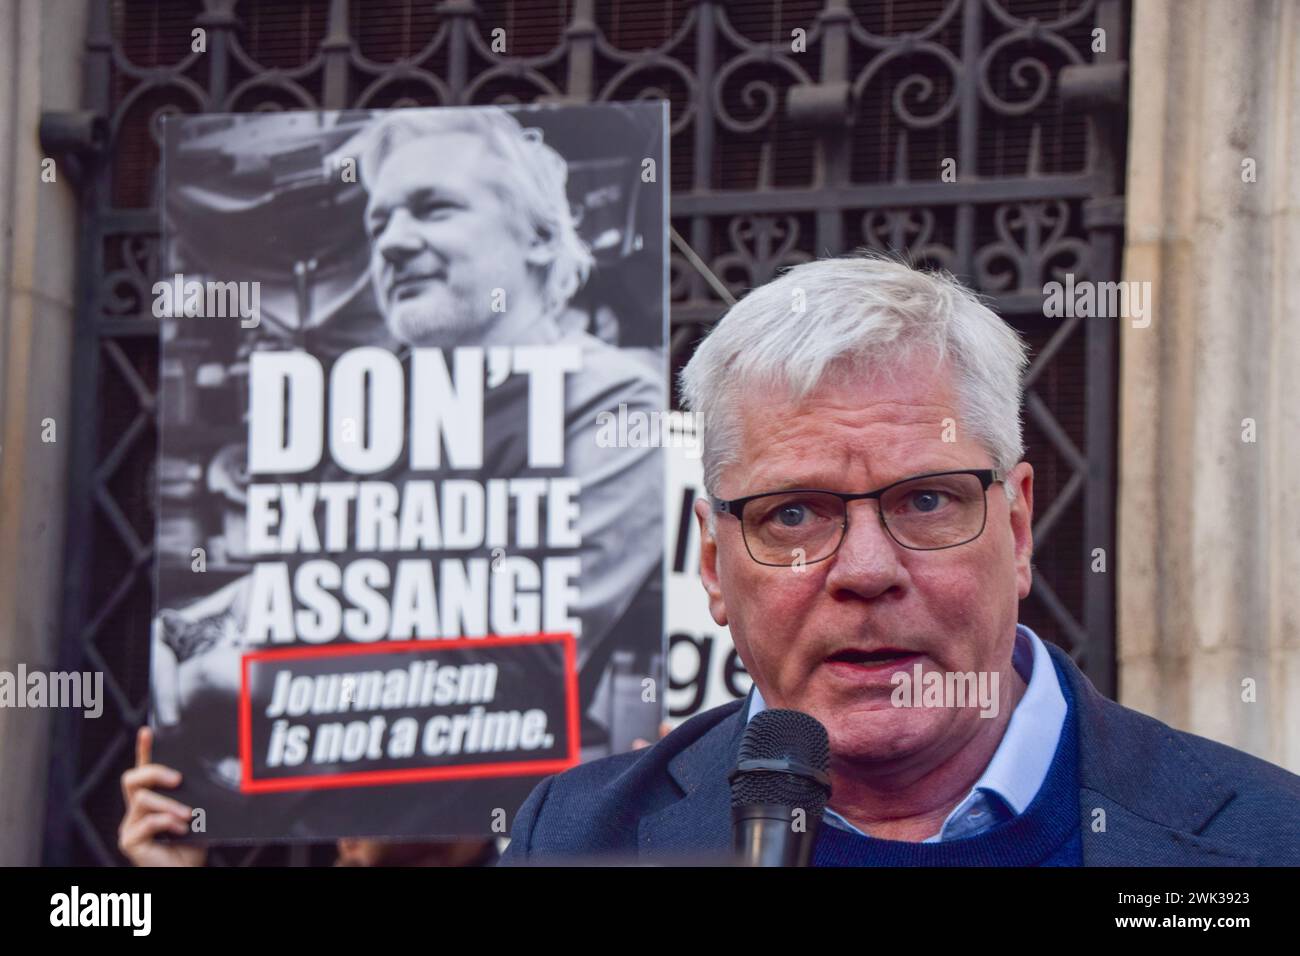 London, Großbritannien. Oktober 2021. WikiLeaks-Chefredakteurin Kristinn Hrafnsson spricht am zweiten Tag der Julian Assange-Anhörung vor den königlichen Justizgerichten. Die US-Regierung legte gegen die Entscheidung, den WikiLeaks-Gründer nicht auszuliefern, Berufung ein. Quelle: Vuk Valcic / Alamy Stockfoto